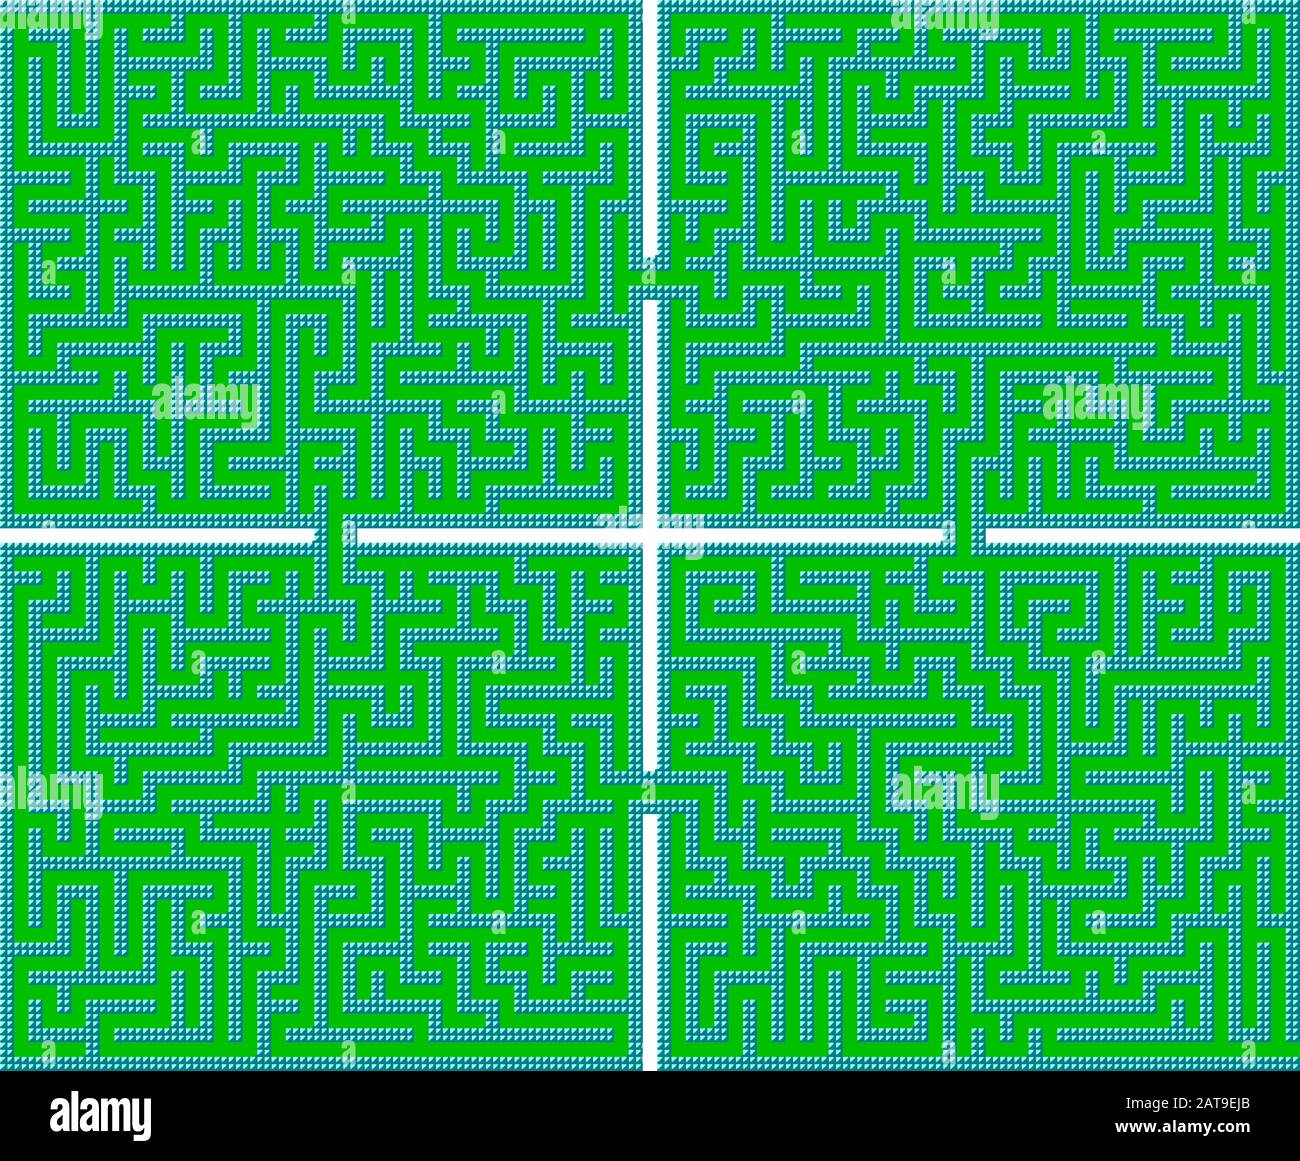 Schwierige Vector Retro Spiel Labyrinth für Kinder Stock Vektor